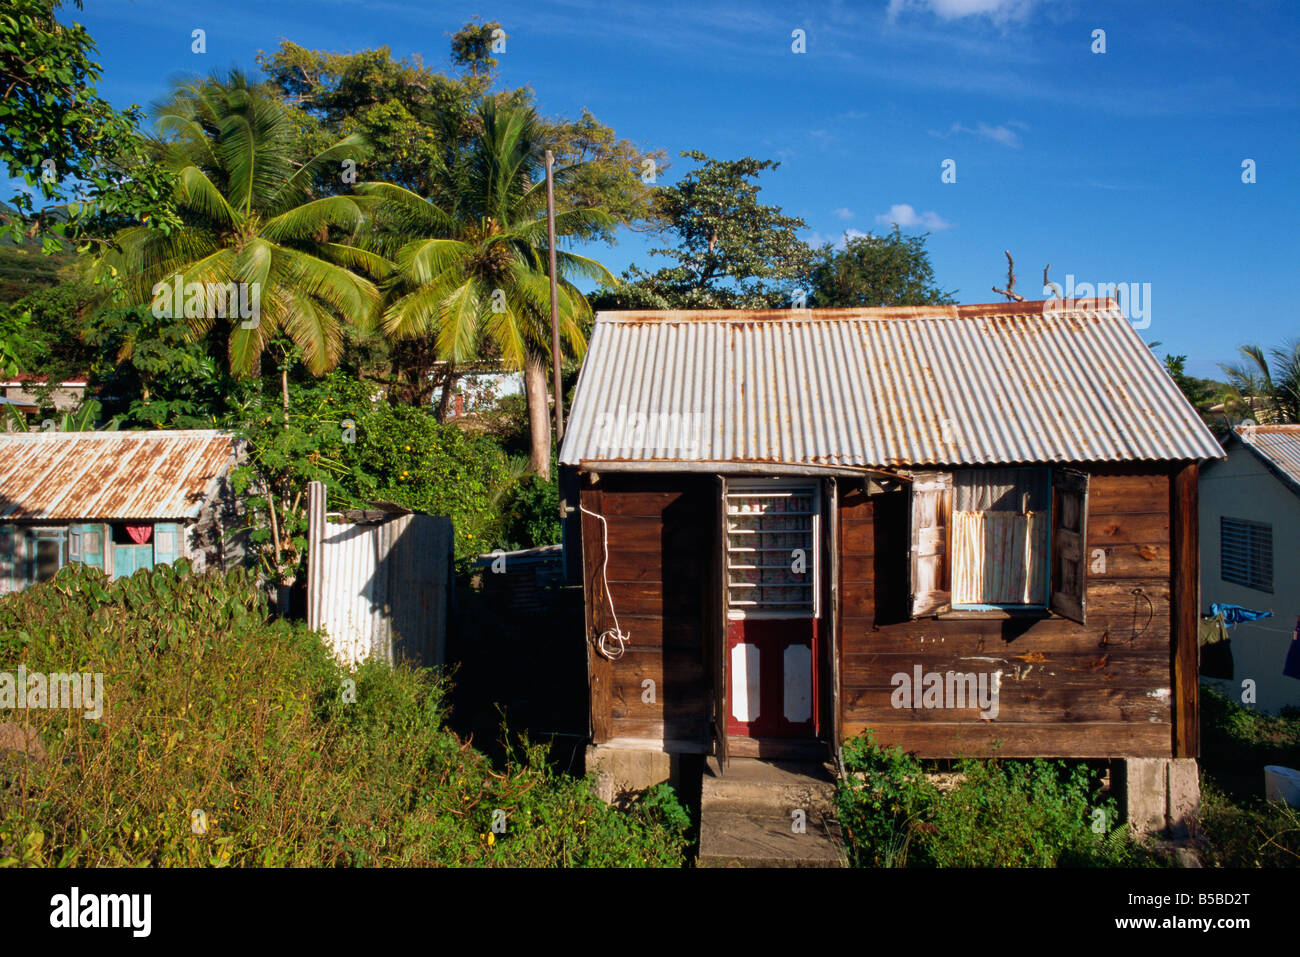 Typische Holzhäuser alte Old Road Town St Kitts Leeward Islands West Indies Karibik Mittelamerika Stockfoto